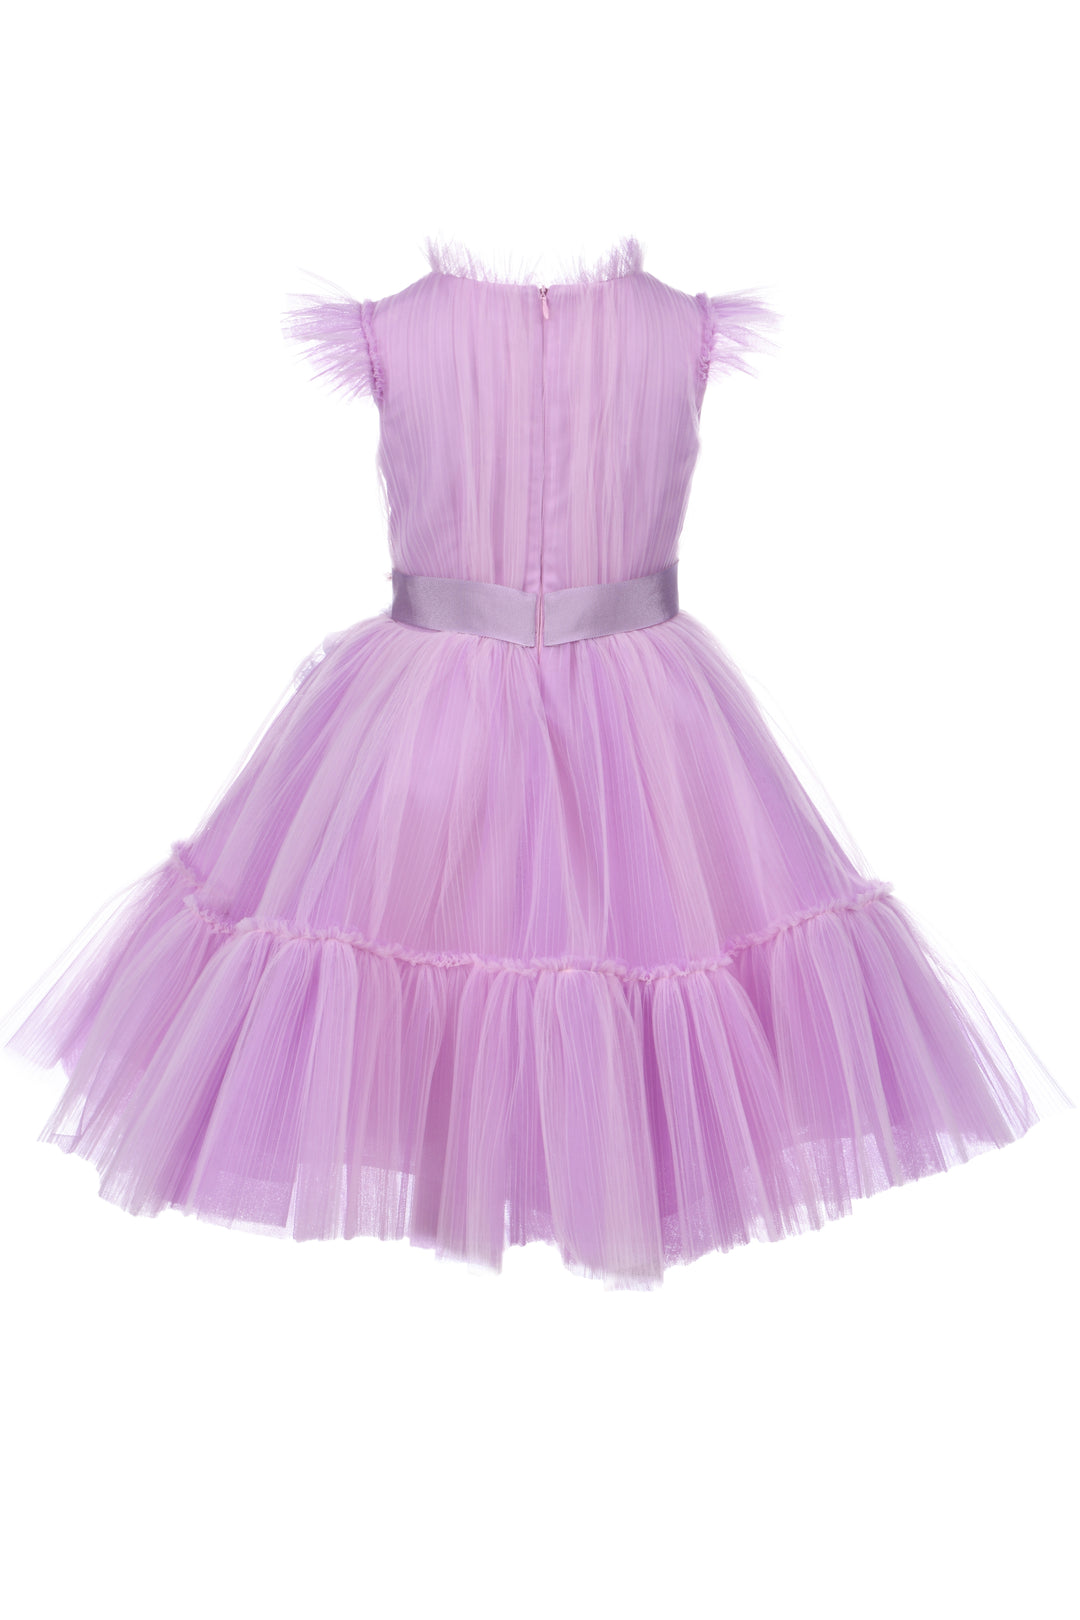 Robe lilas pour petite fille, avec appliqué de fleurs et modèle avec ceinture et jupe en tulle à volants